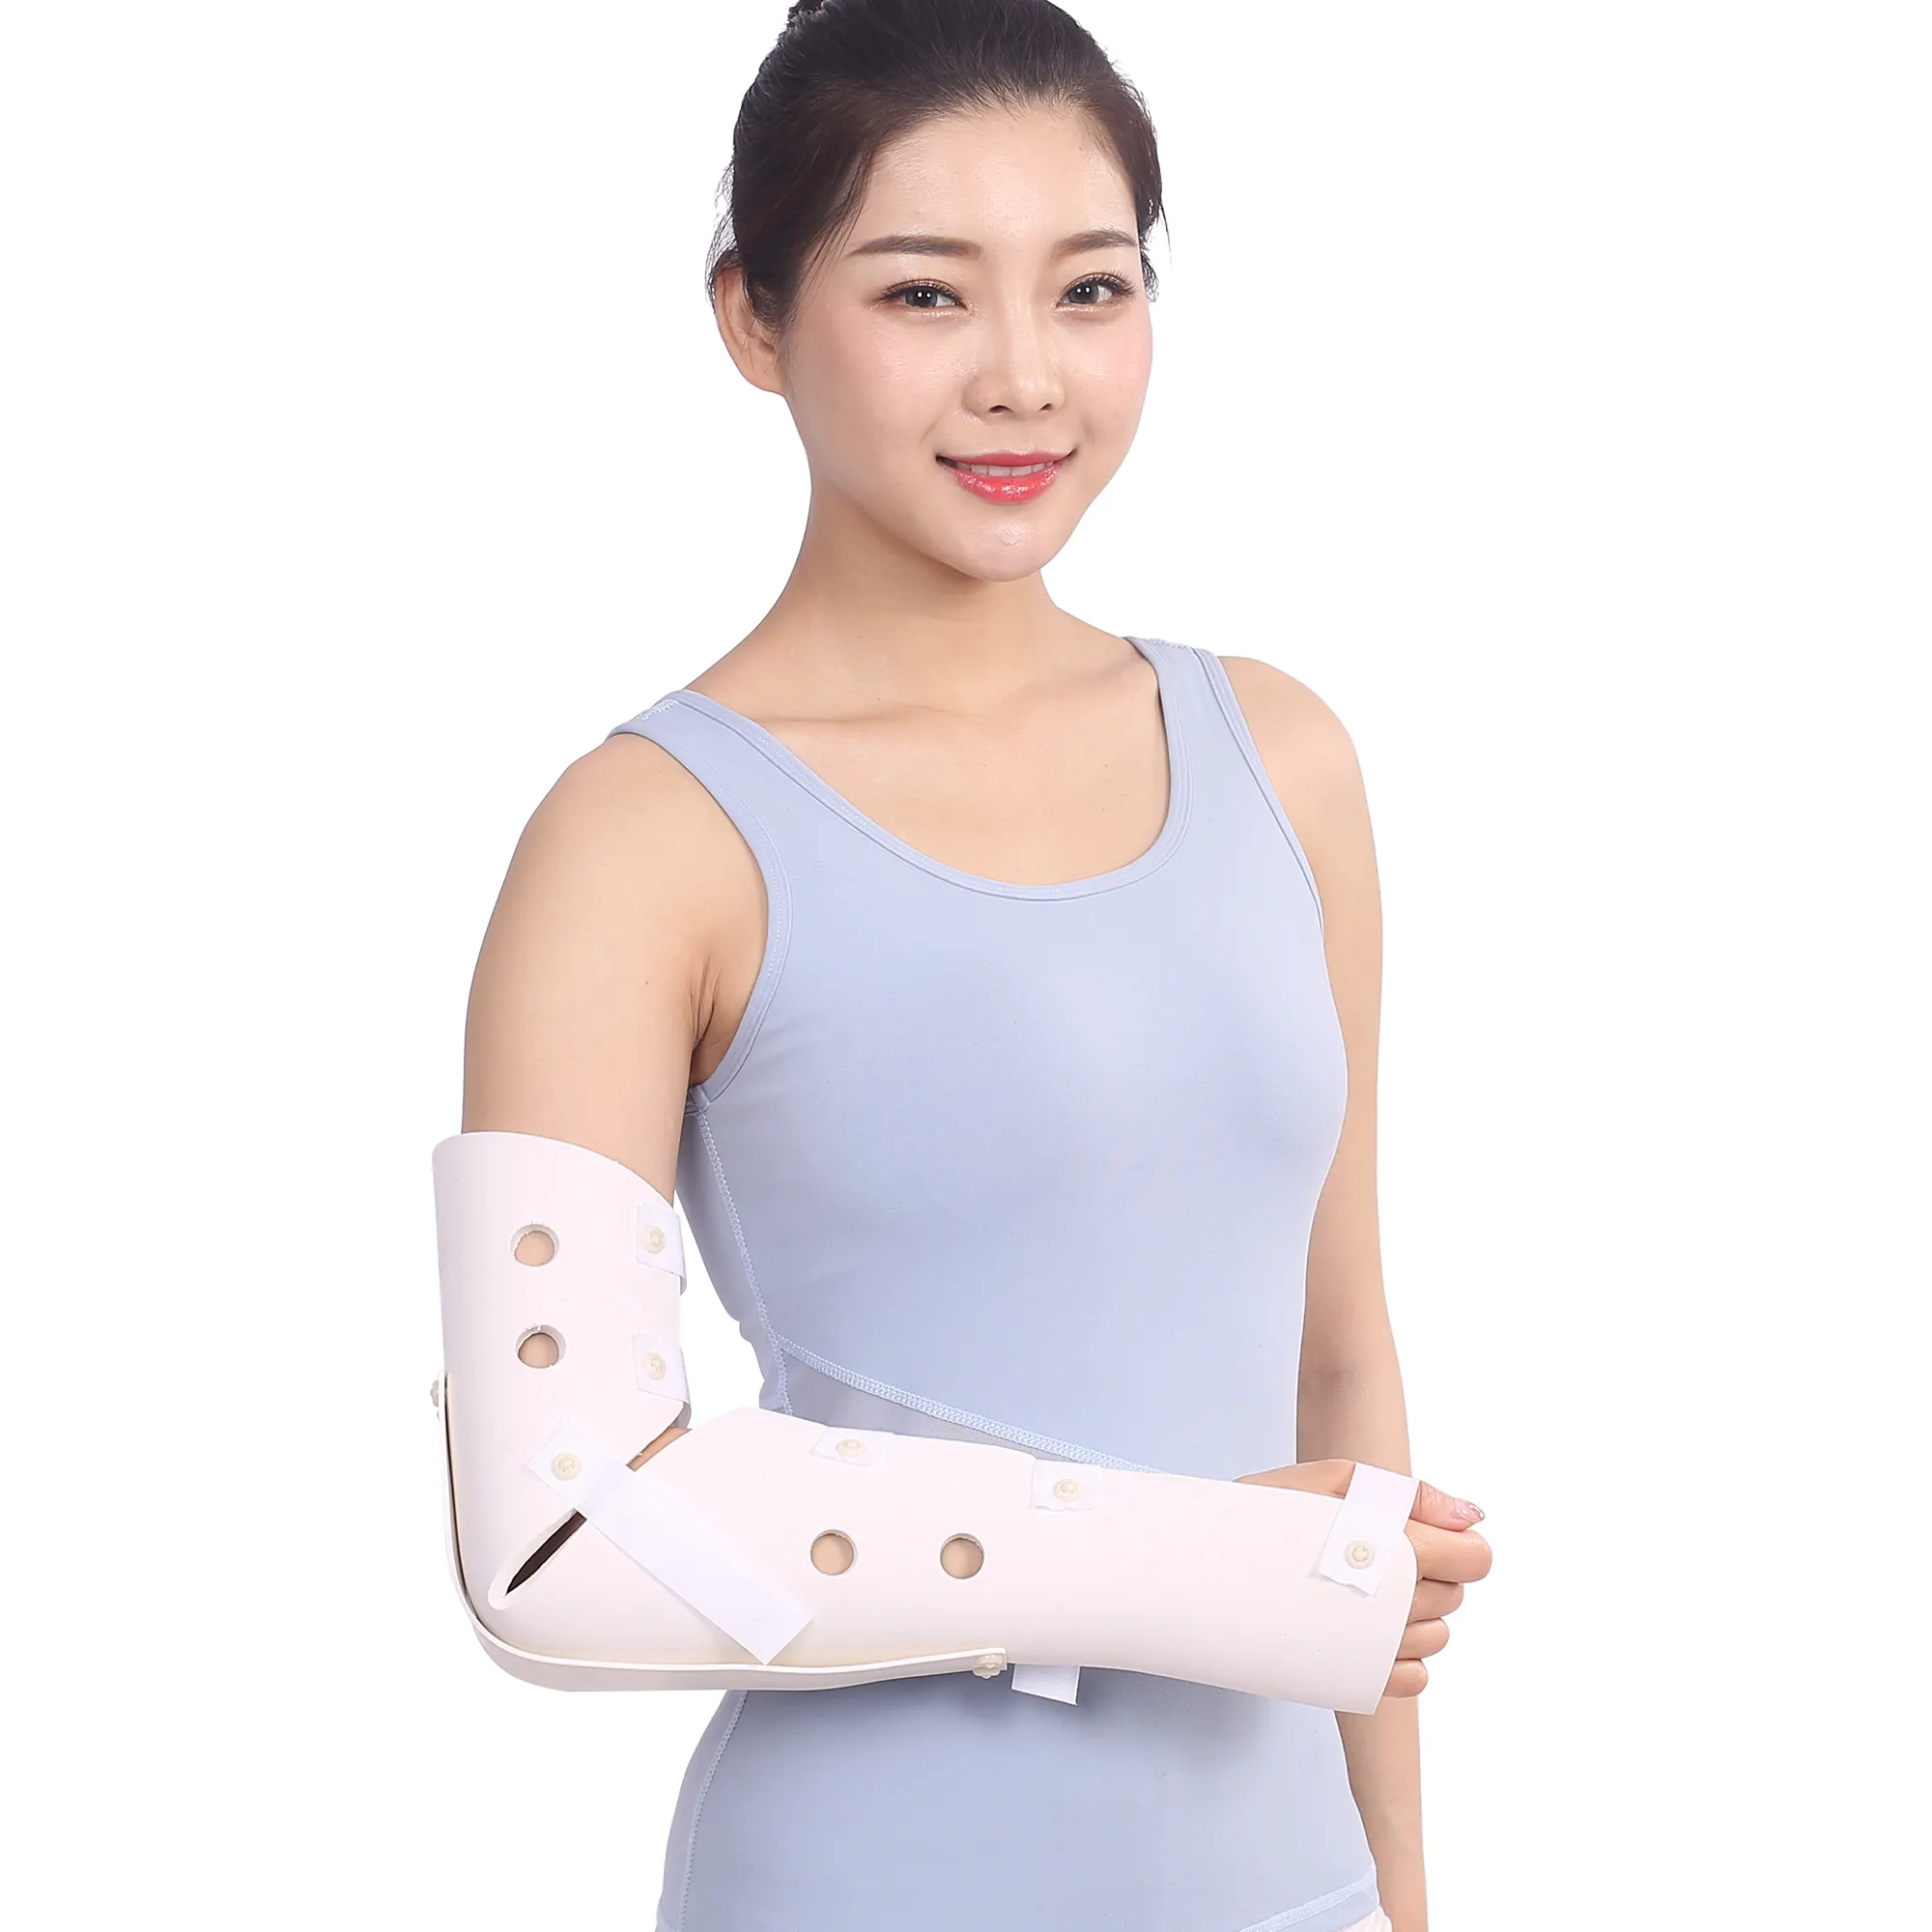 Polymer cổ tay xương cố định vành đai cẳng tay doanh bán kính xương cố định hỗ trợ cẳng tay Cổ tay gãy xương bảo vệ